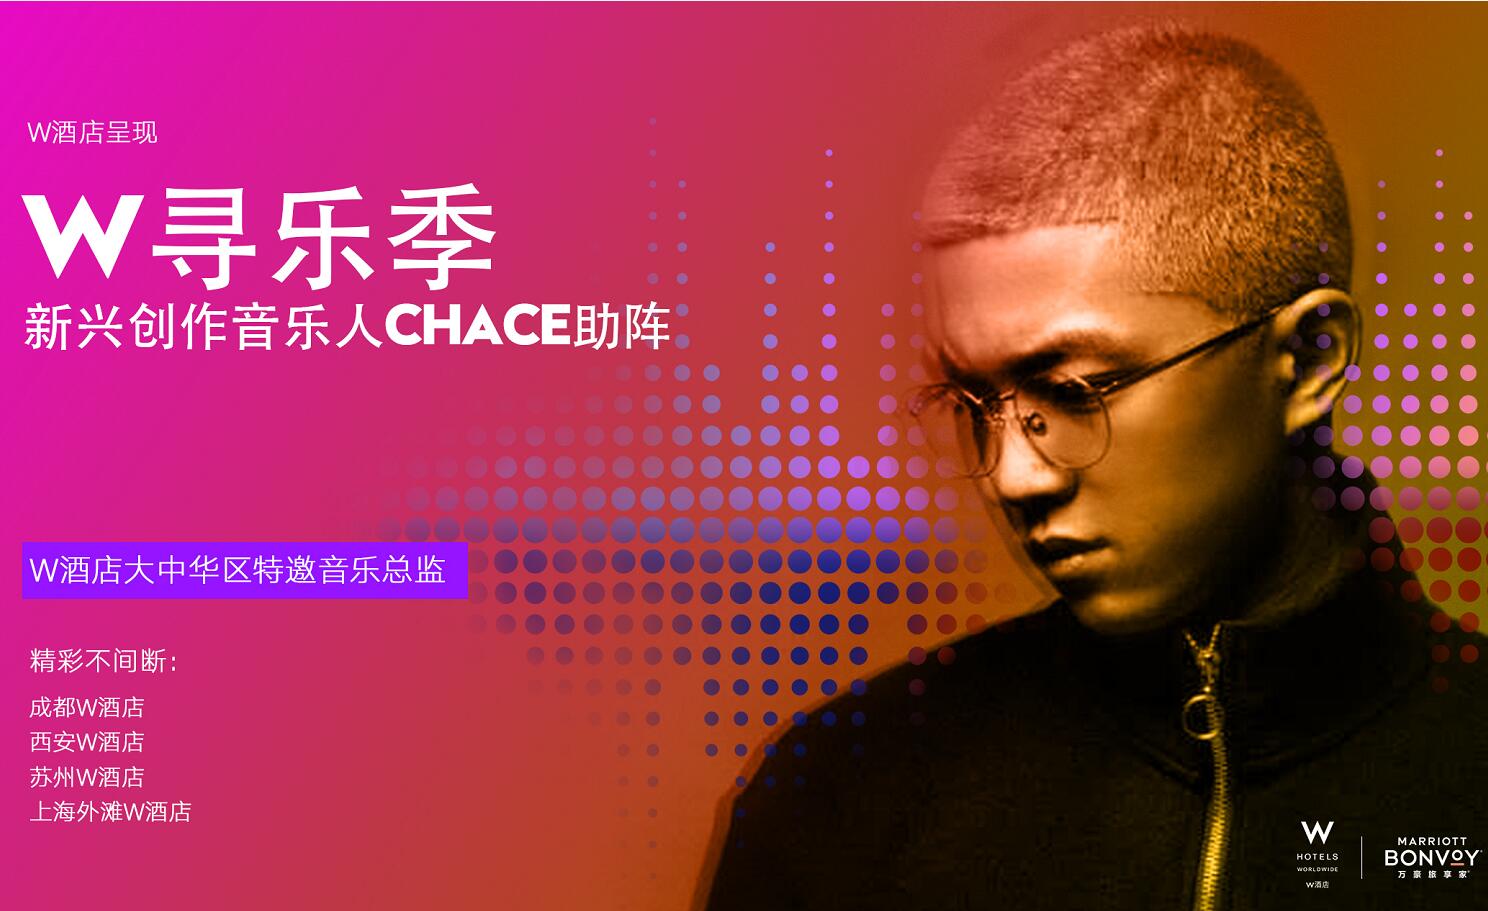 中國新興音樂才子Chace成為W酒店在中國的首位特邀音樂總監